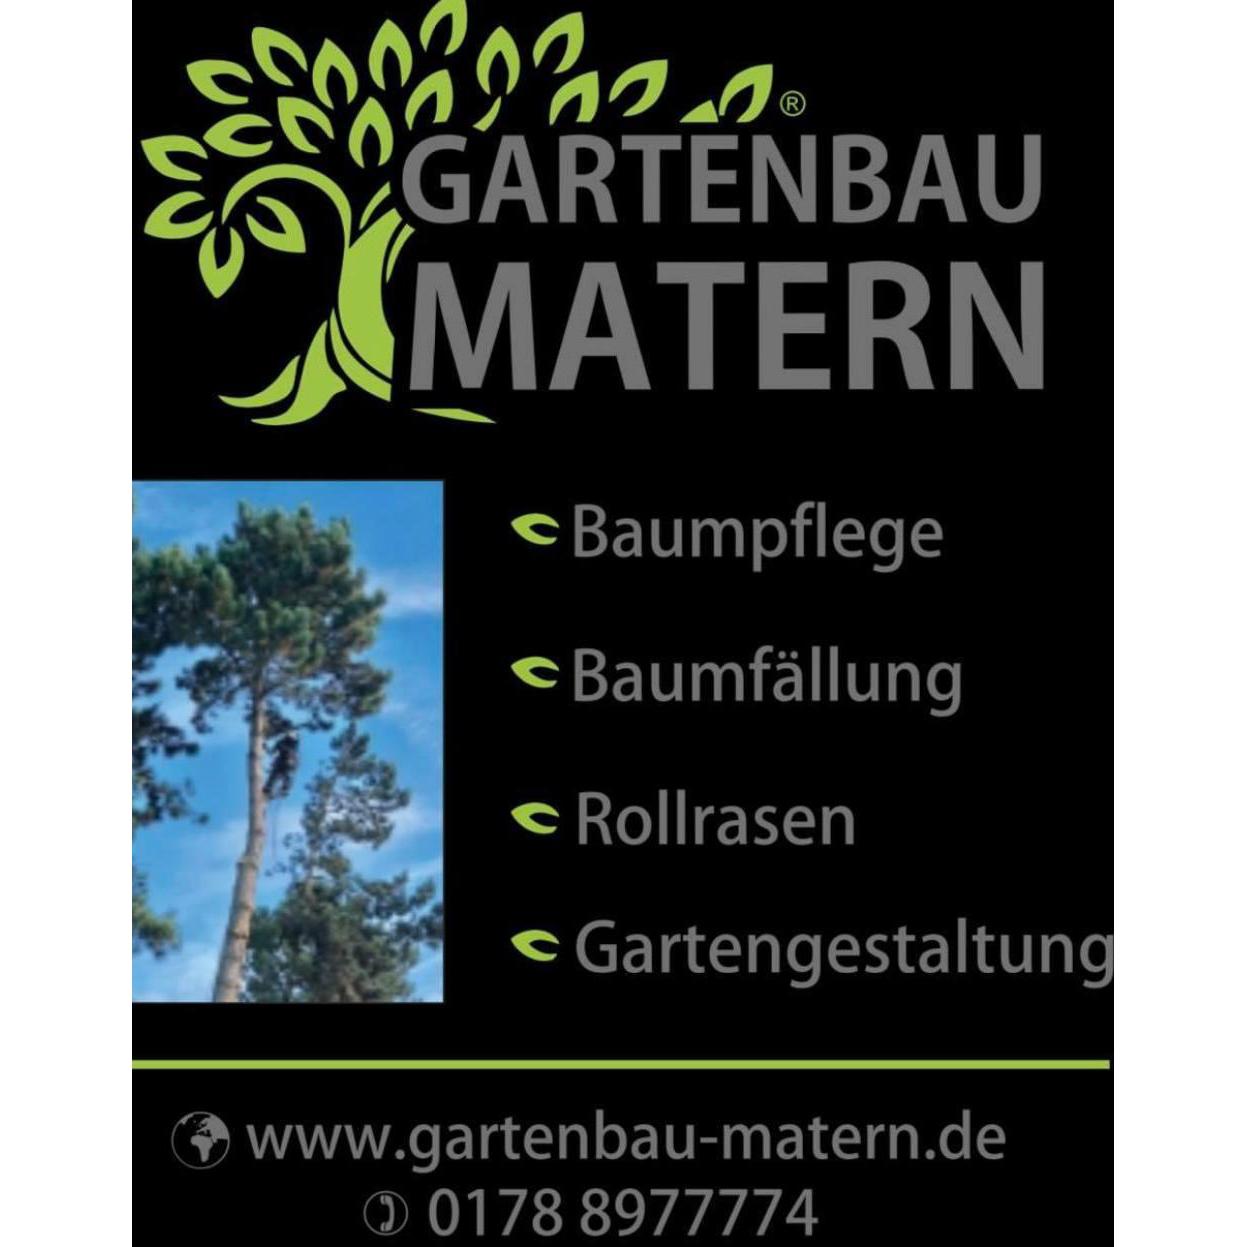 Baumdienst Baumfällung Gartengestaltung-Gartenservice-Baumpflege  